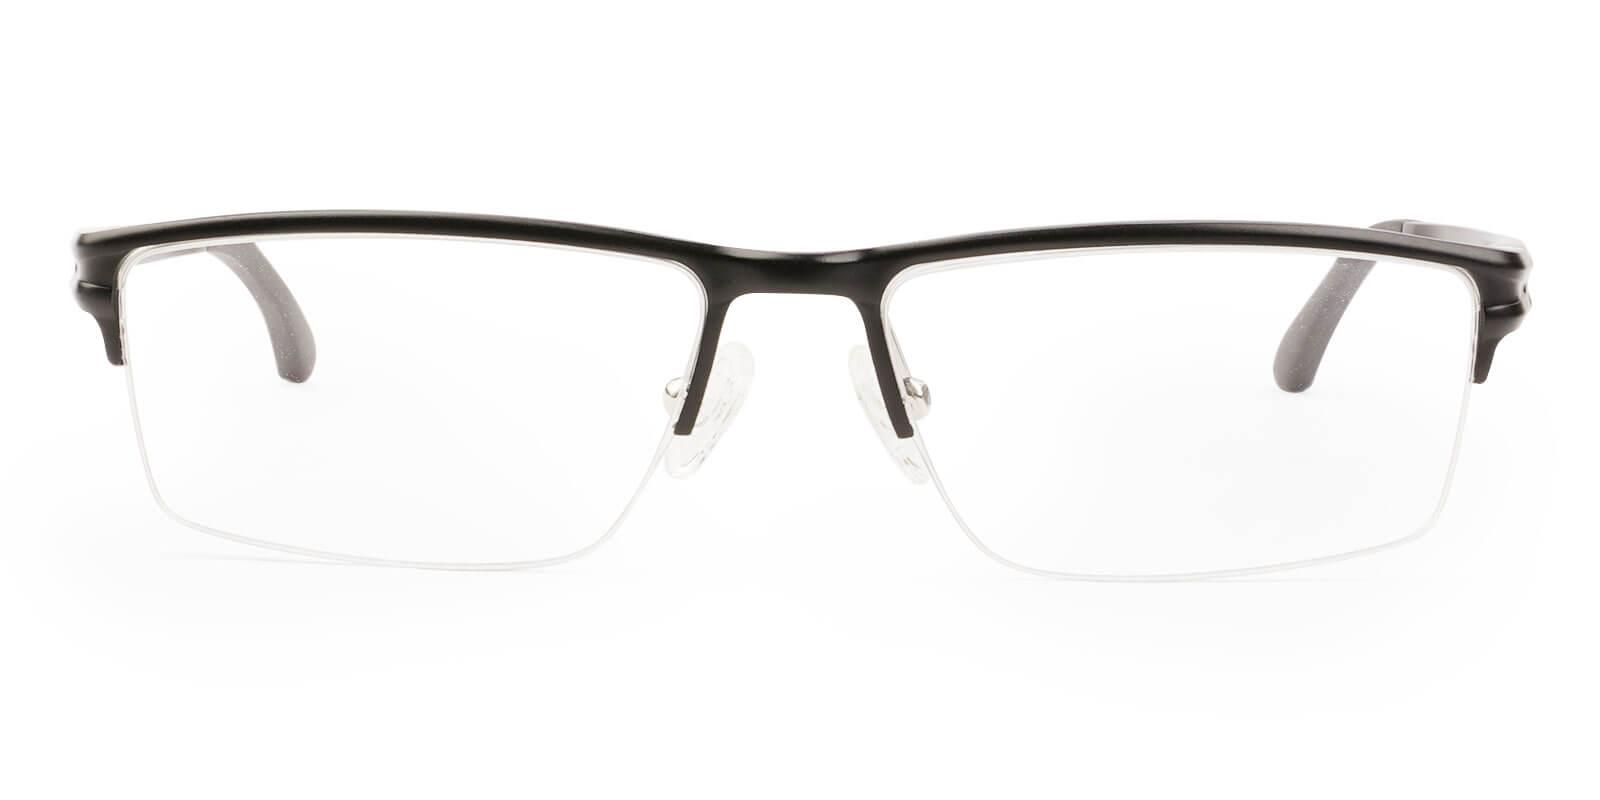 Seagull Black Metal NosePads , SportsGlasses , SpringHinges Frames from ABBE Glasses